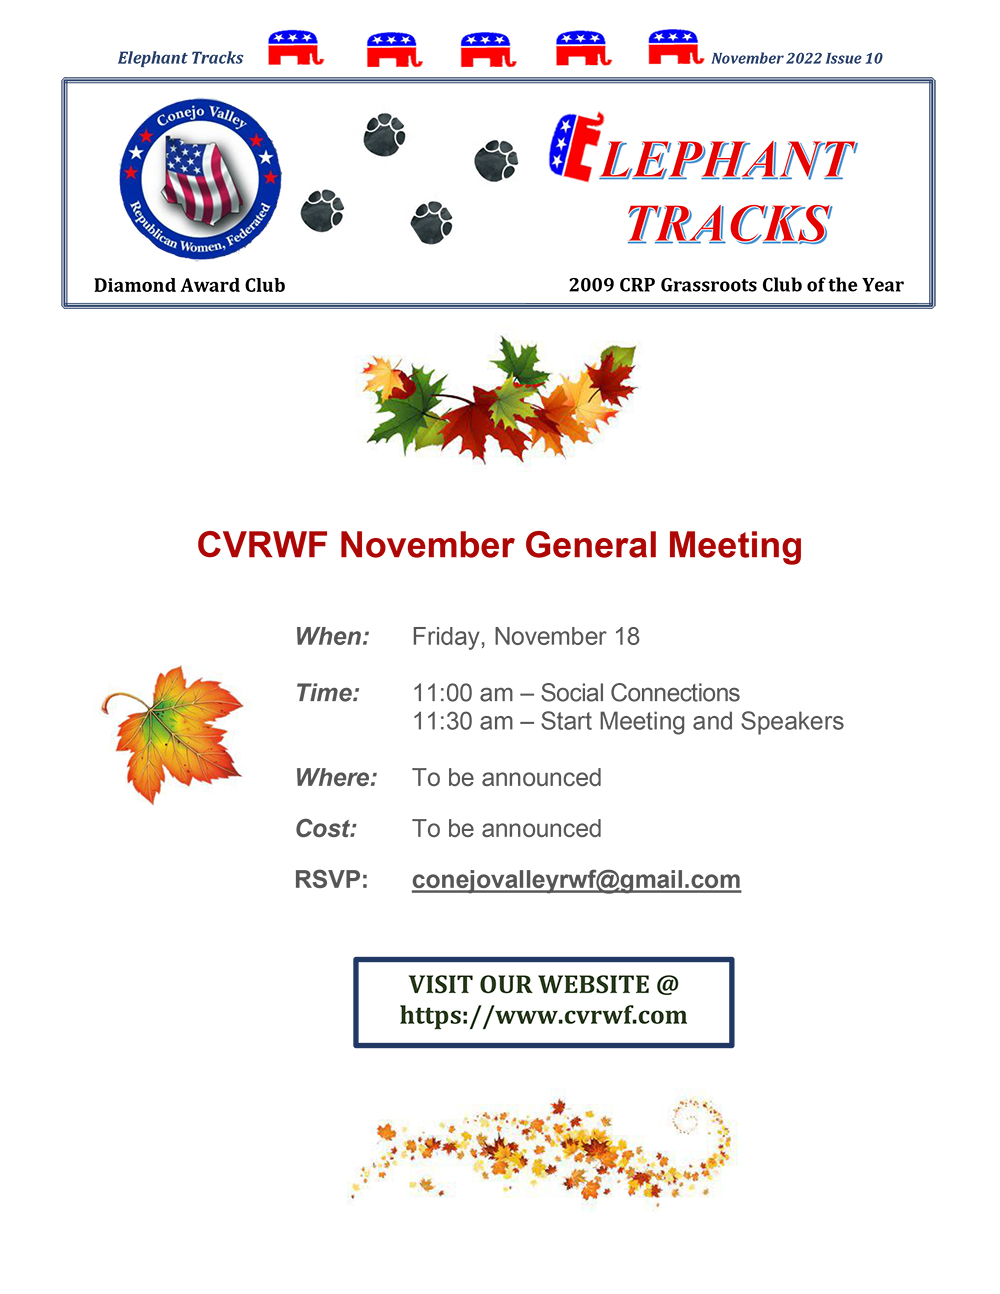 CVRWF November General Meeting